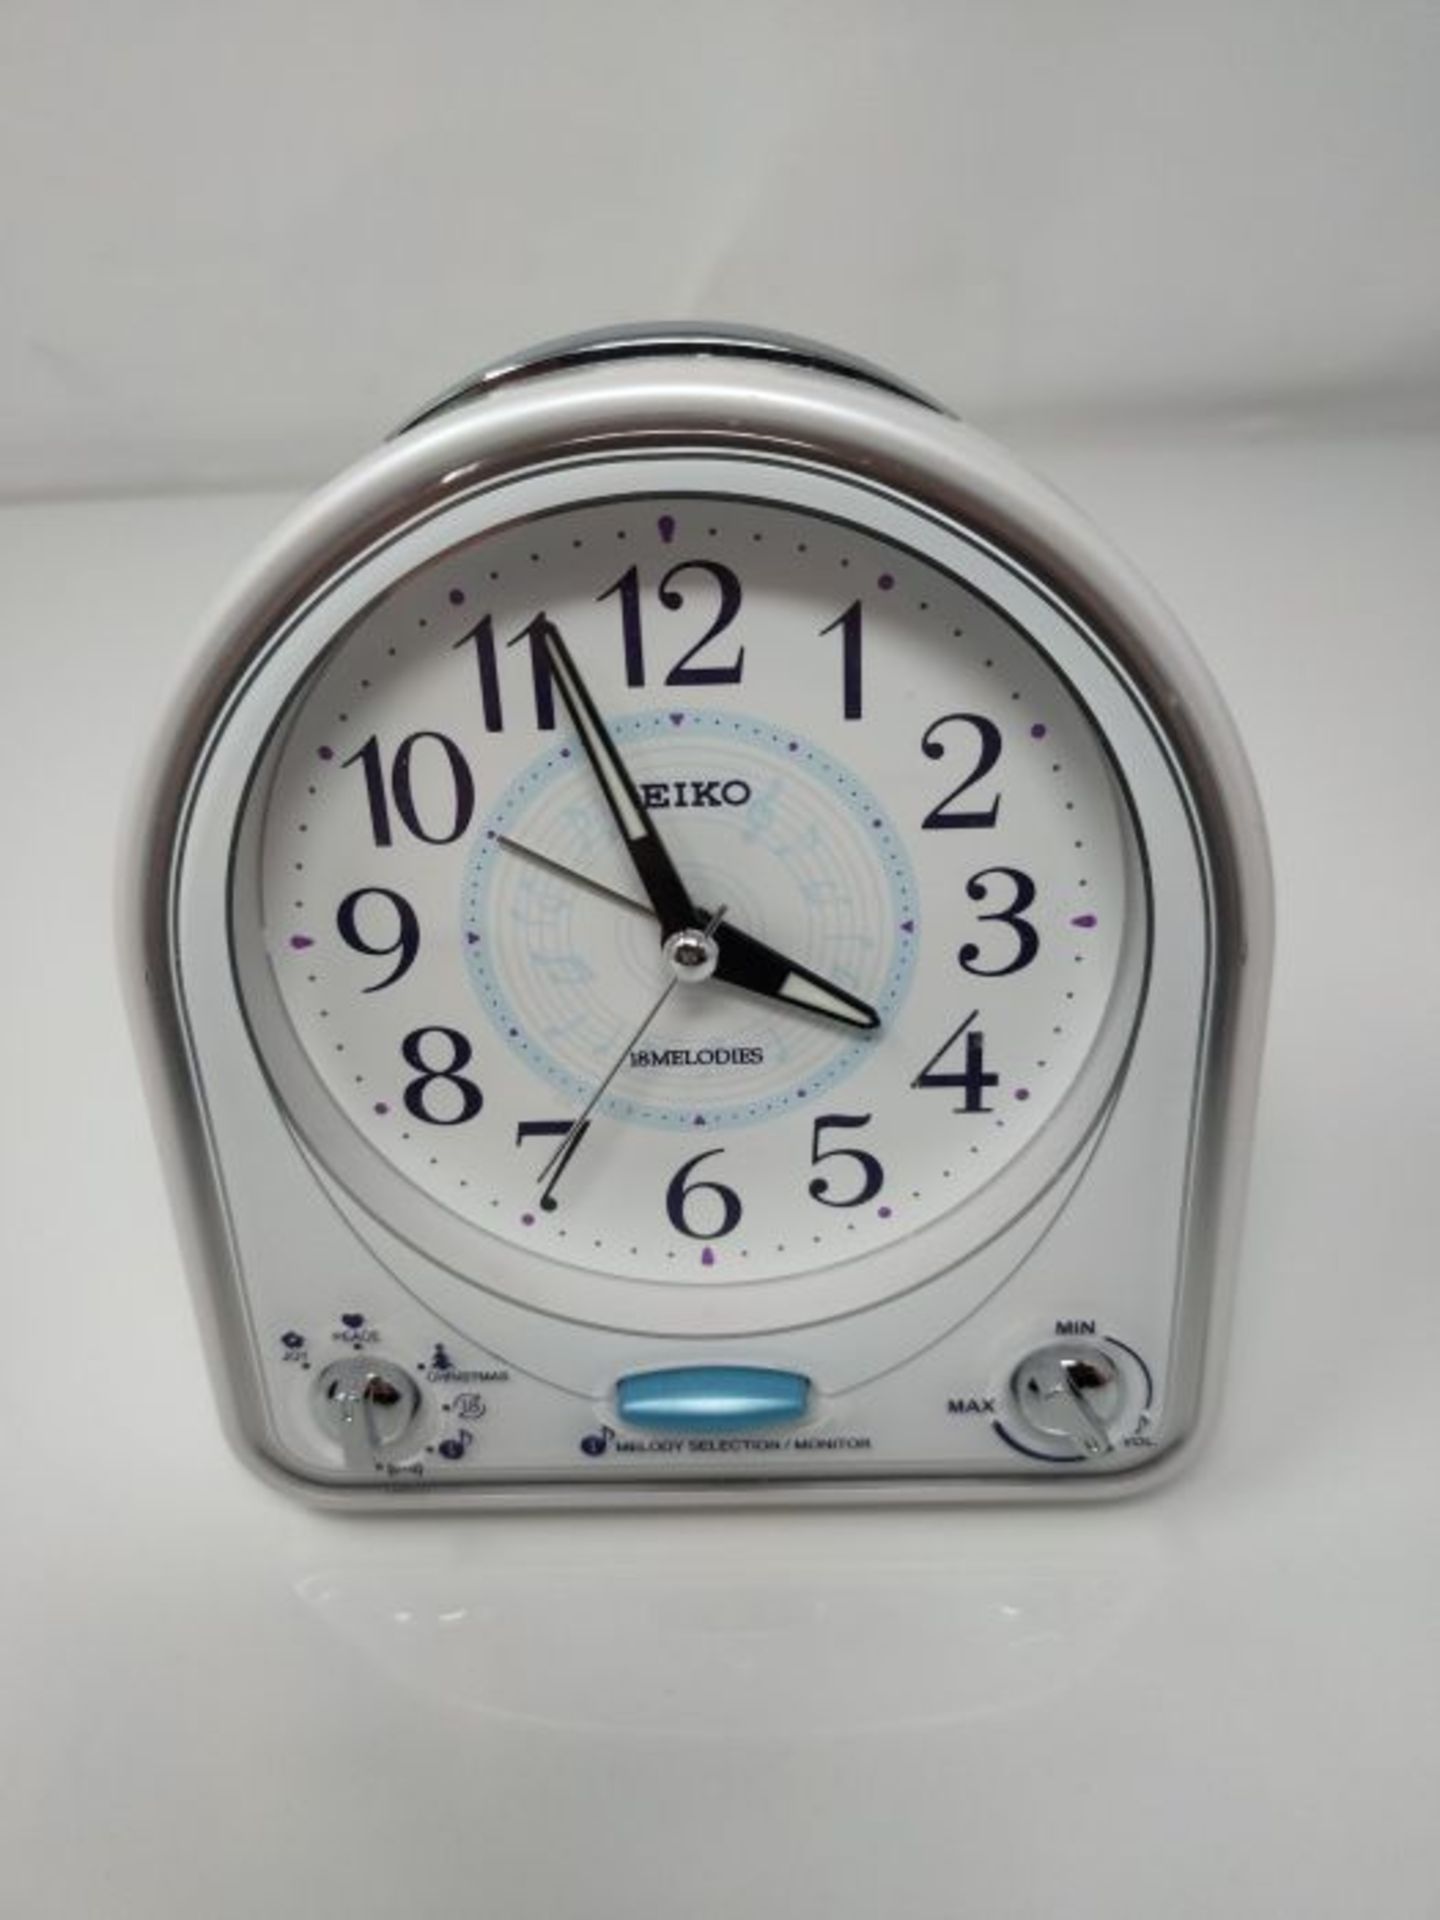 Seiko Alarm Clock, White, One Size - Image 2 of 2